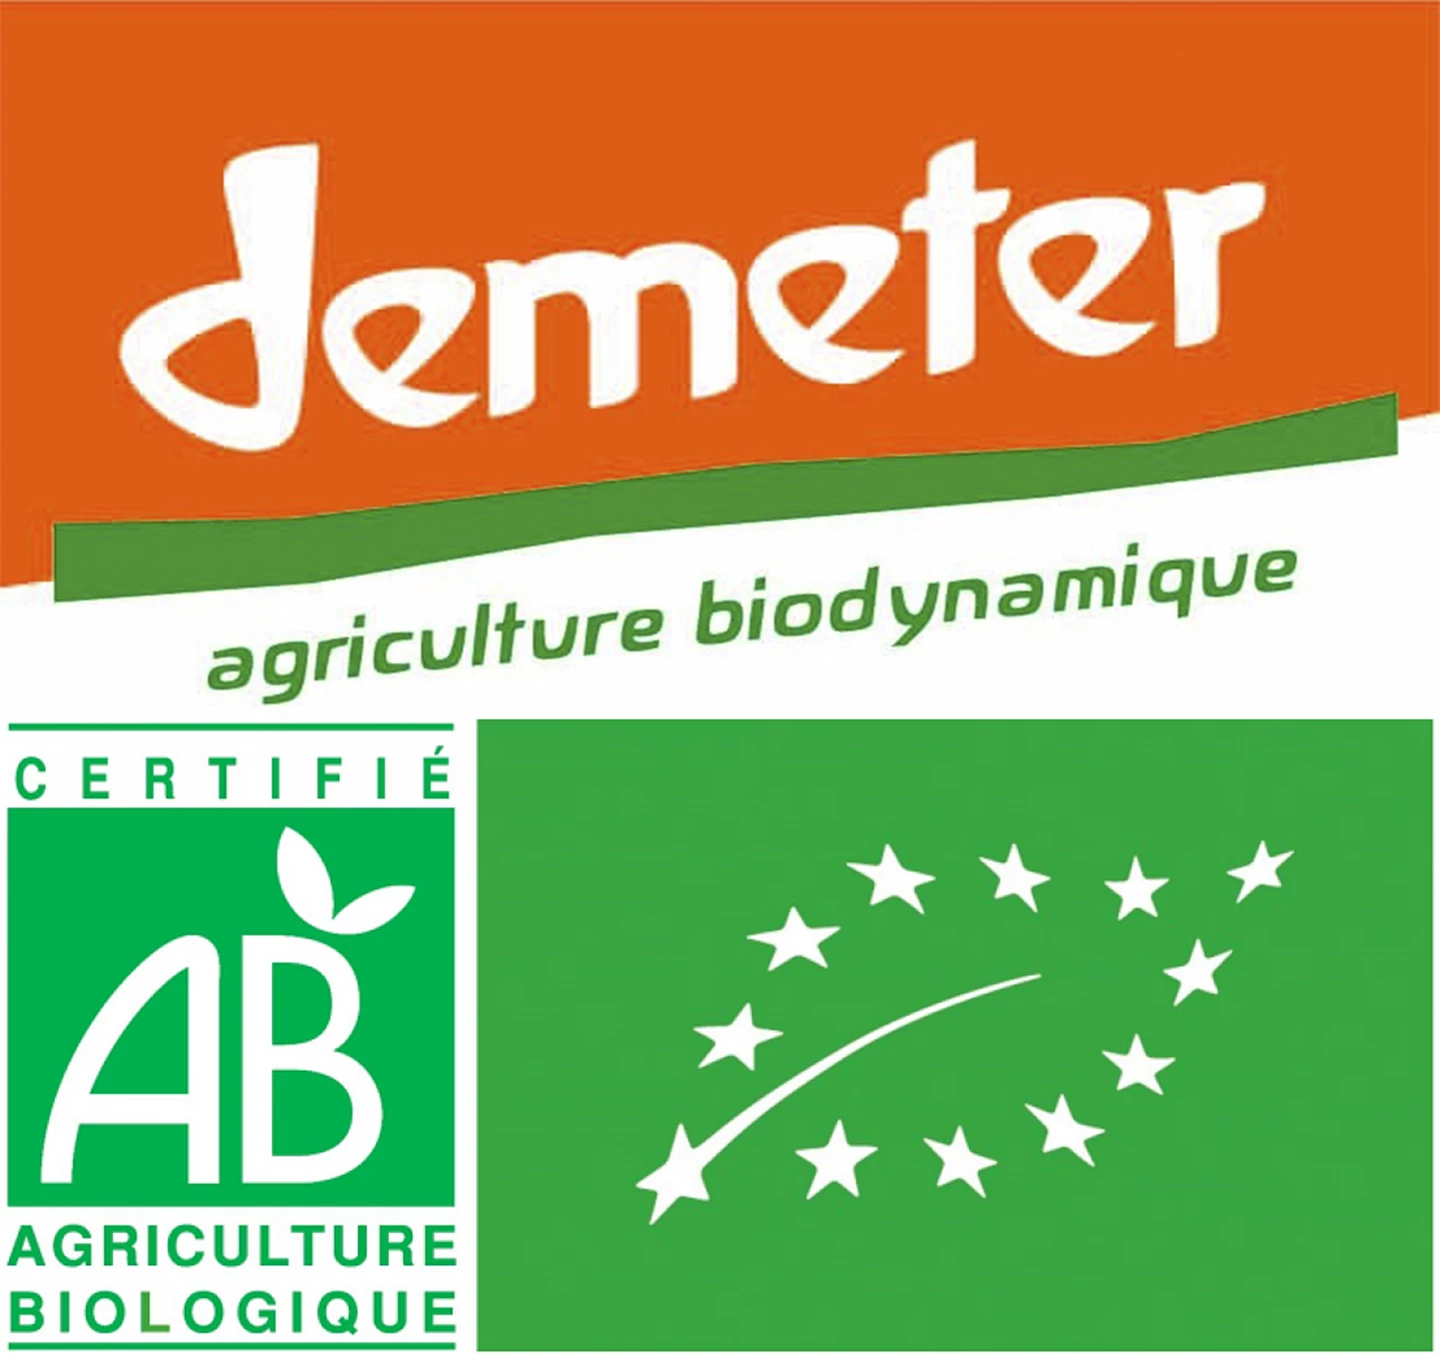 AB_biologique_Demeter_Biodynamique_France_logo